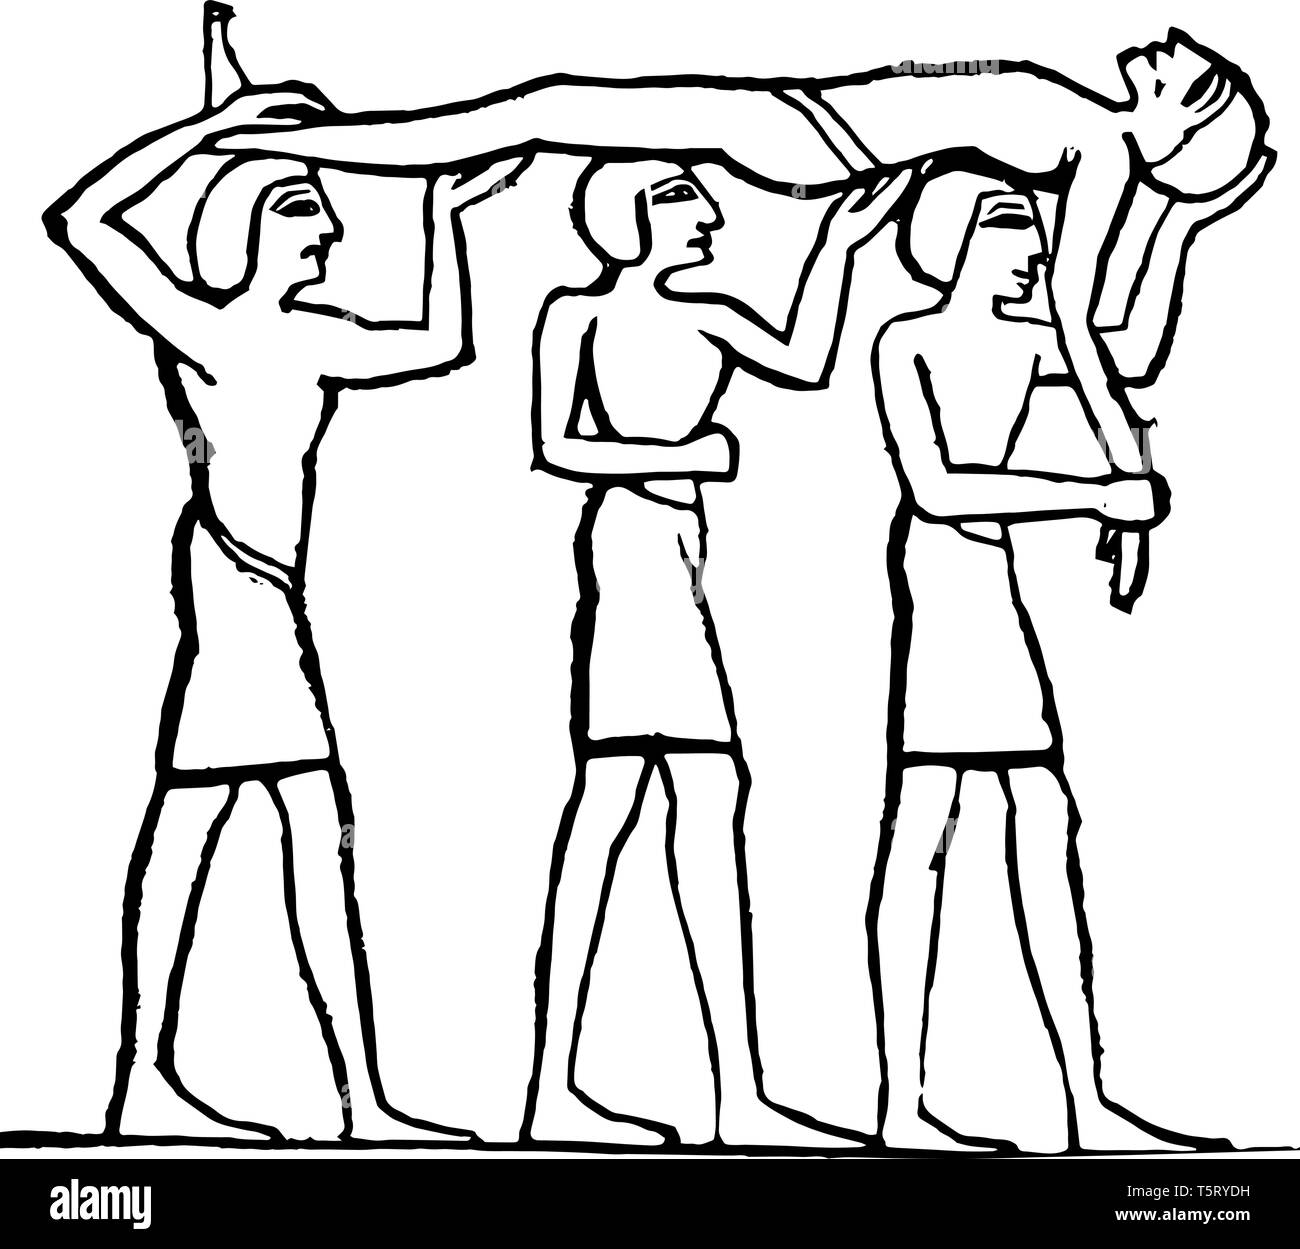 Egyptiens transport d'une autre au-dessus de leurs têtes, égyptien vintage dessin ou gravure illustration. Illustration de Vecteur